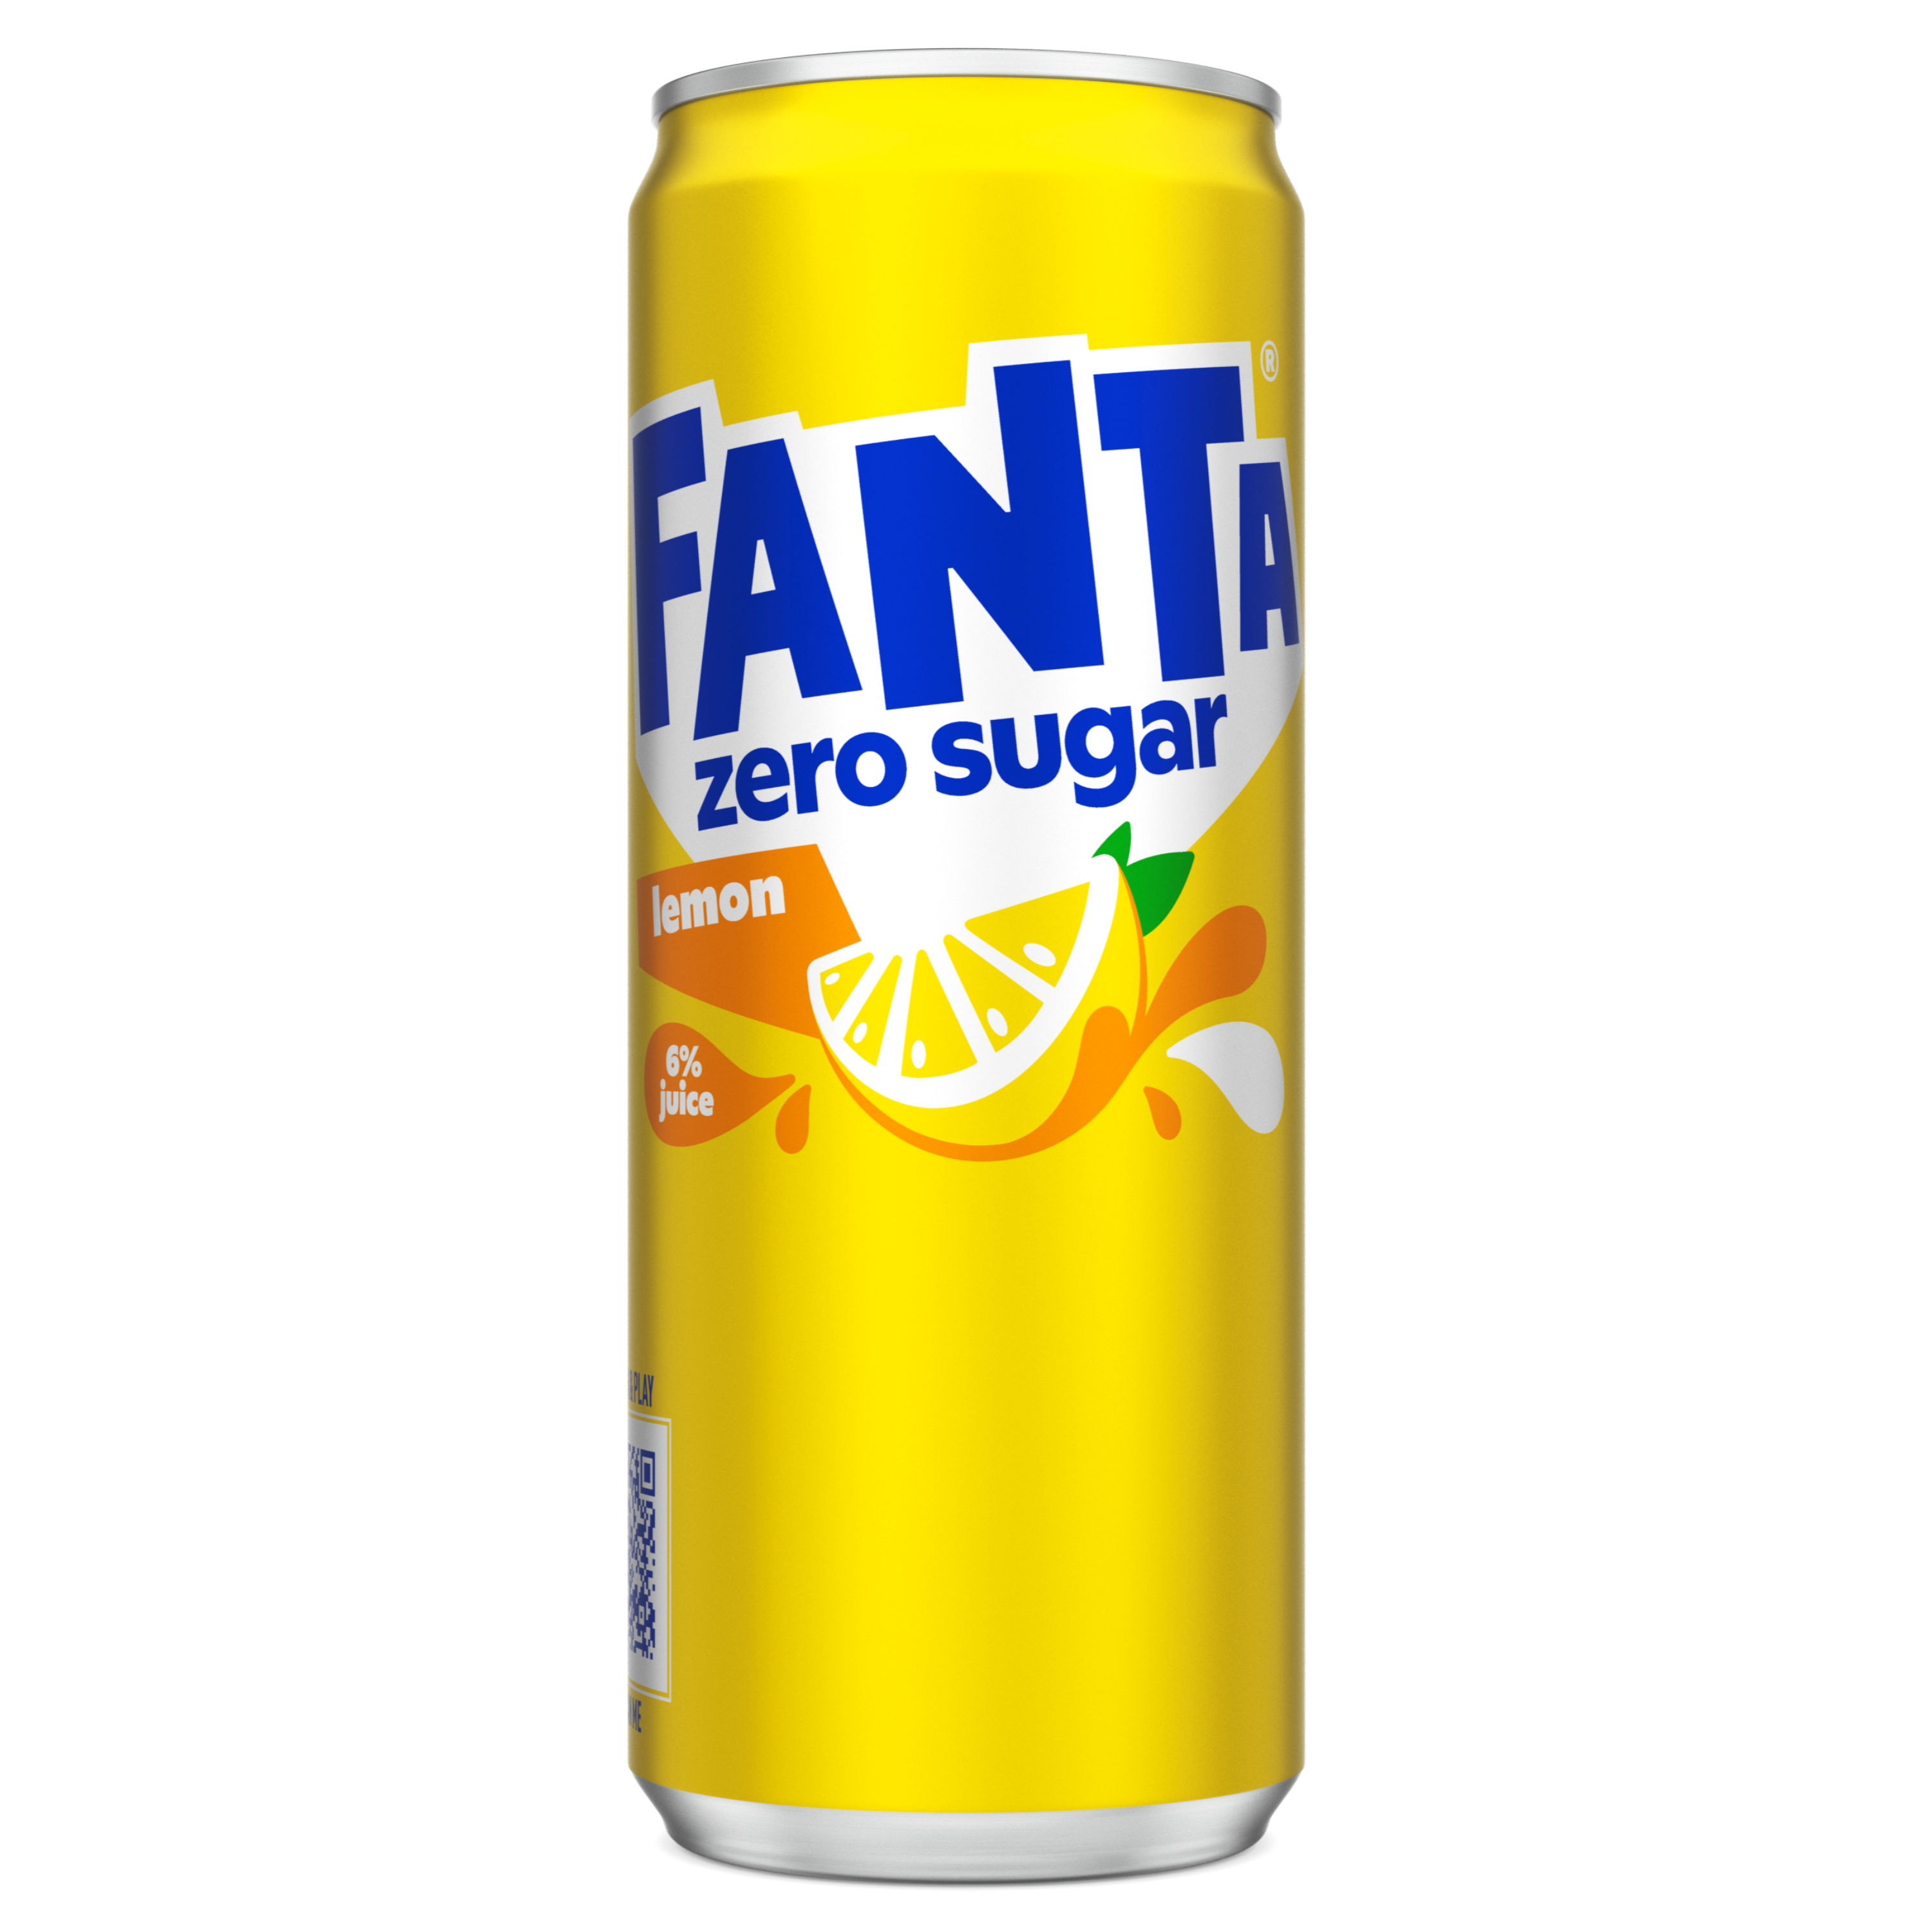 Fanta Lemon Zero Sugar